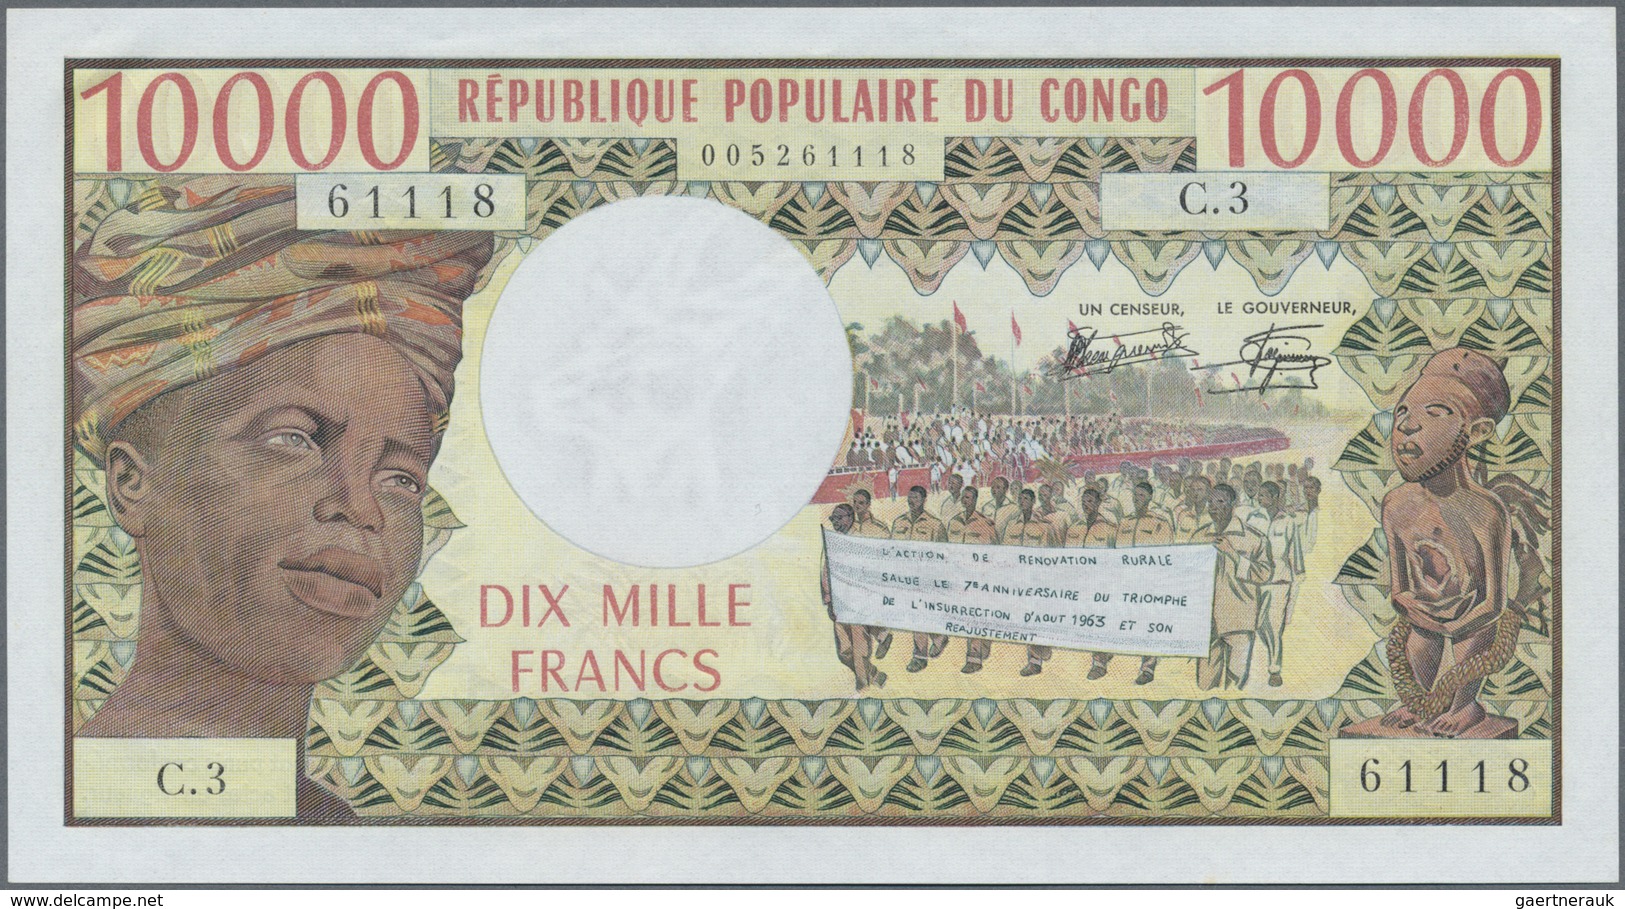 Congo / Kongo: 10.000 Francs ND P. 5b In Condition: UNC. - Non Classificati